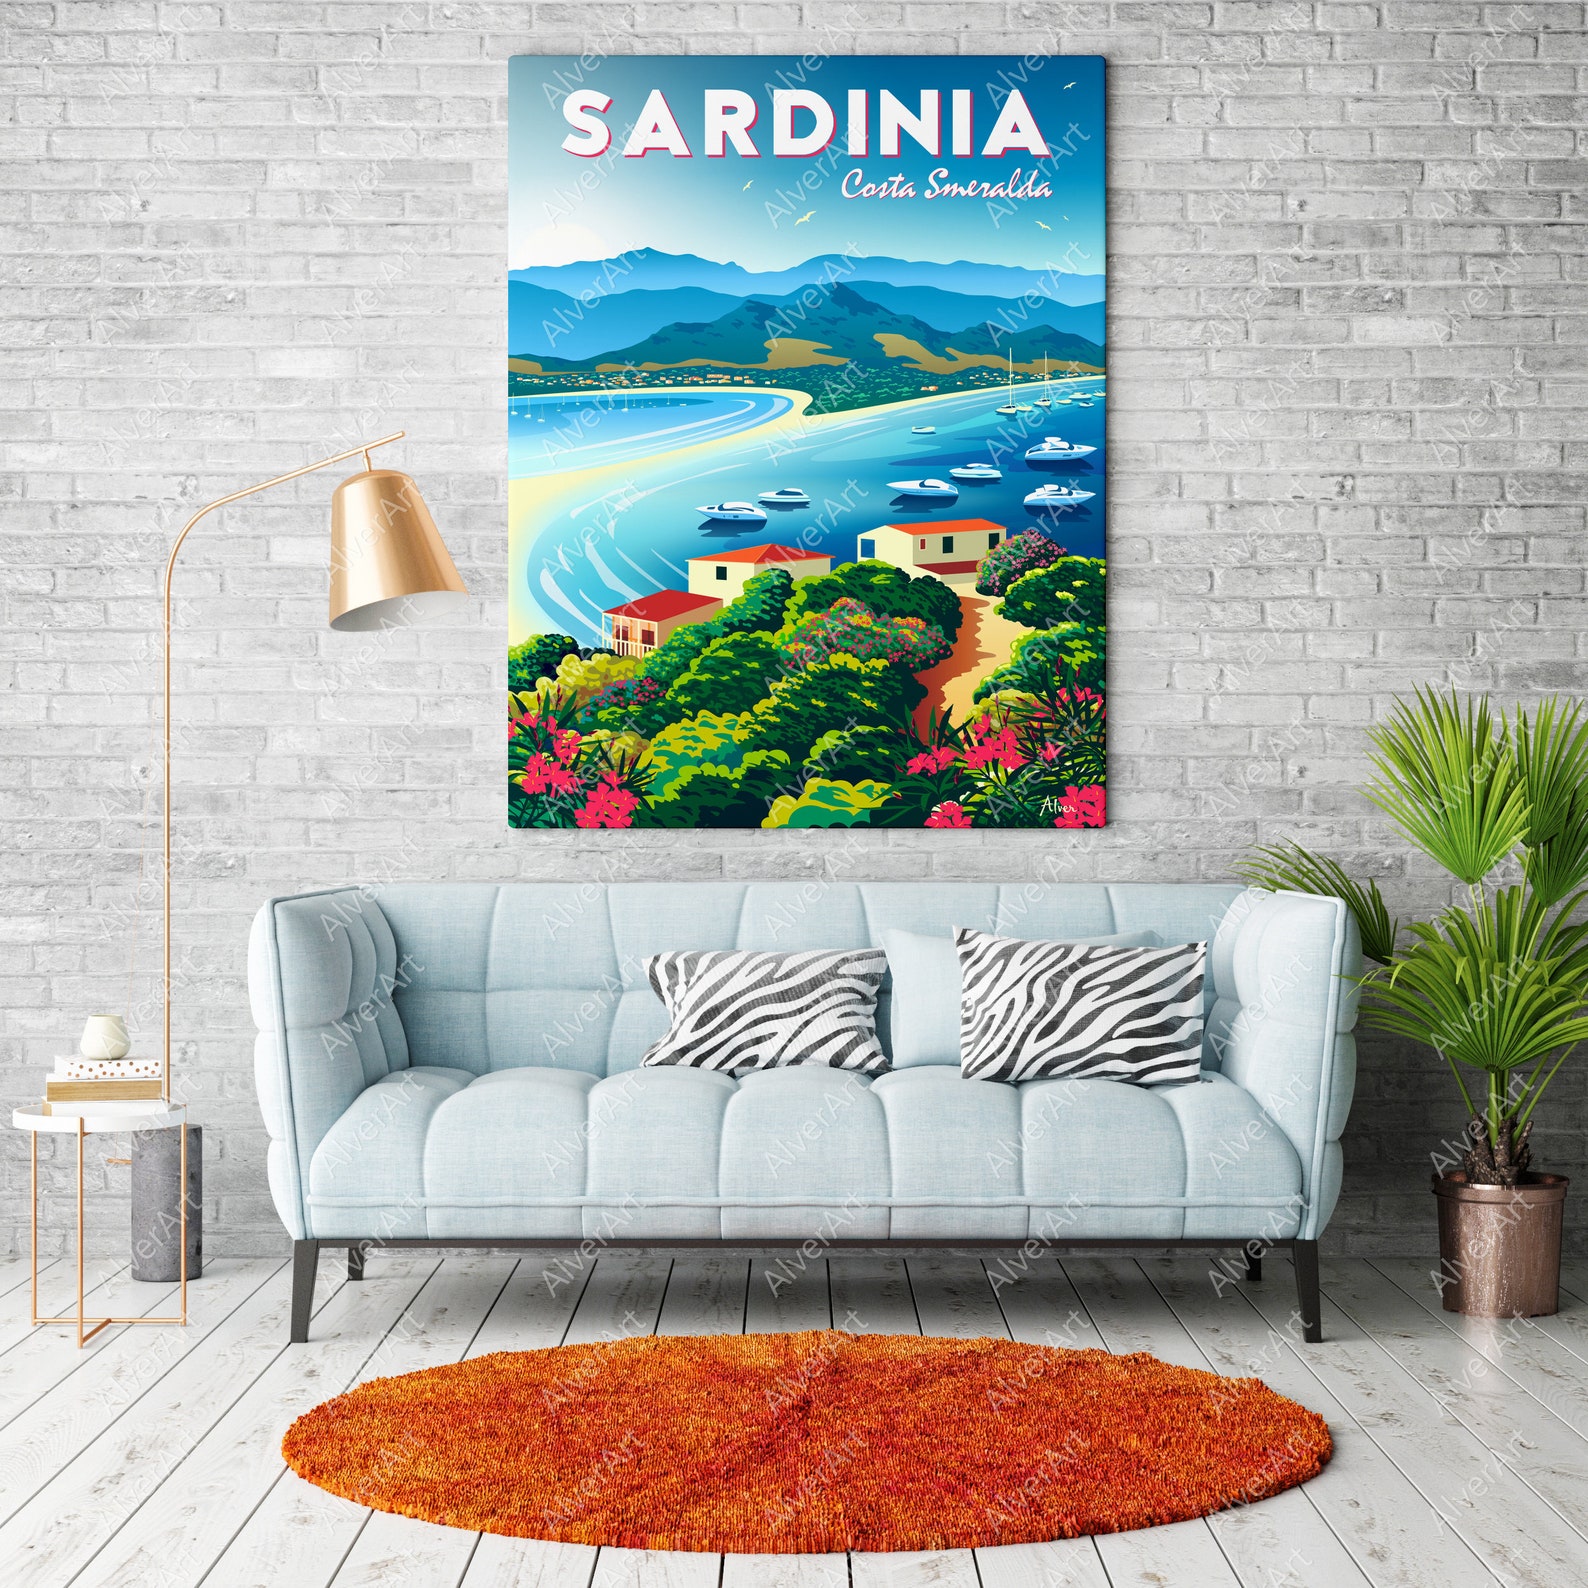 sardinia travel poster